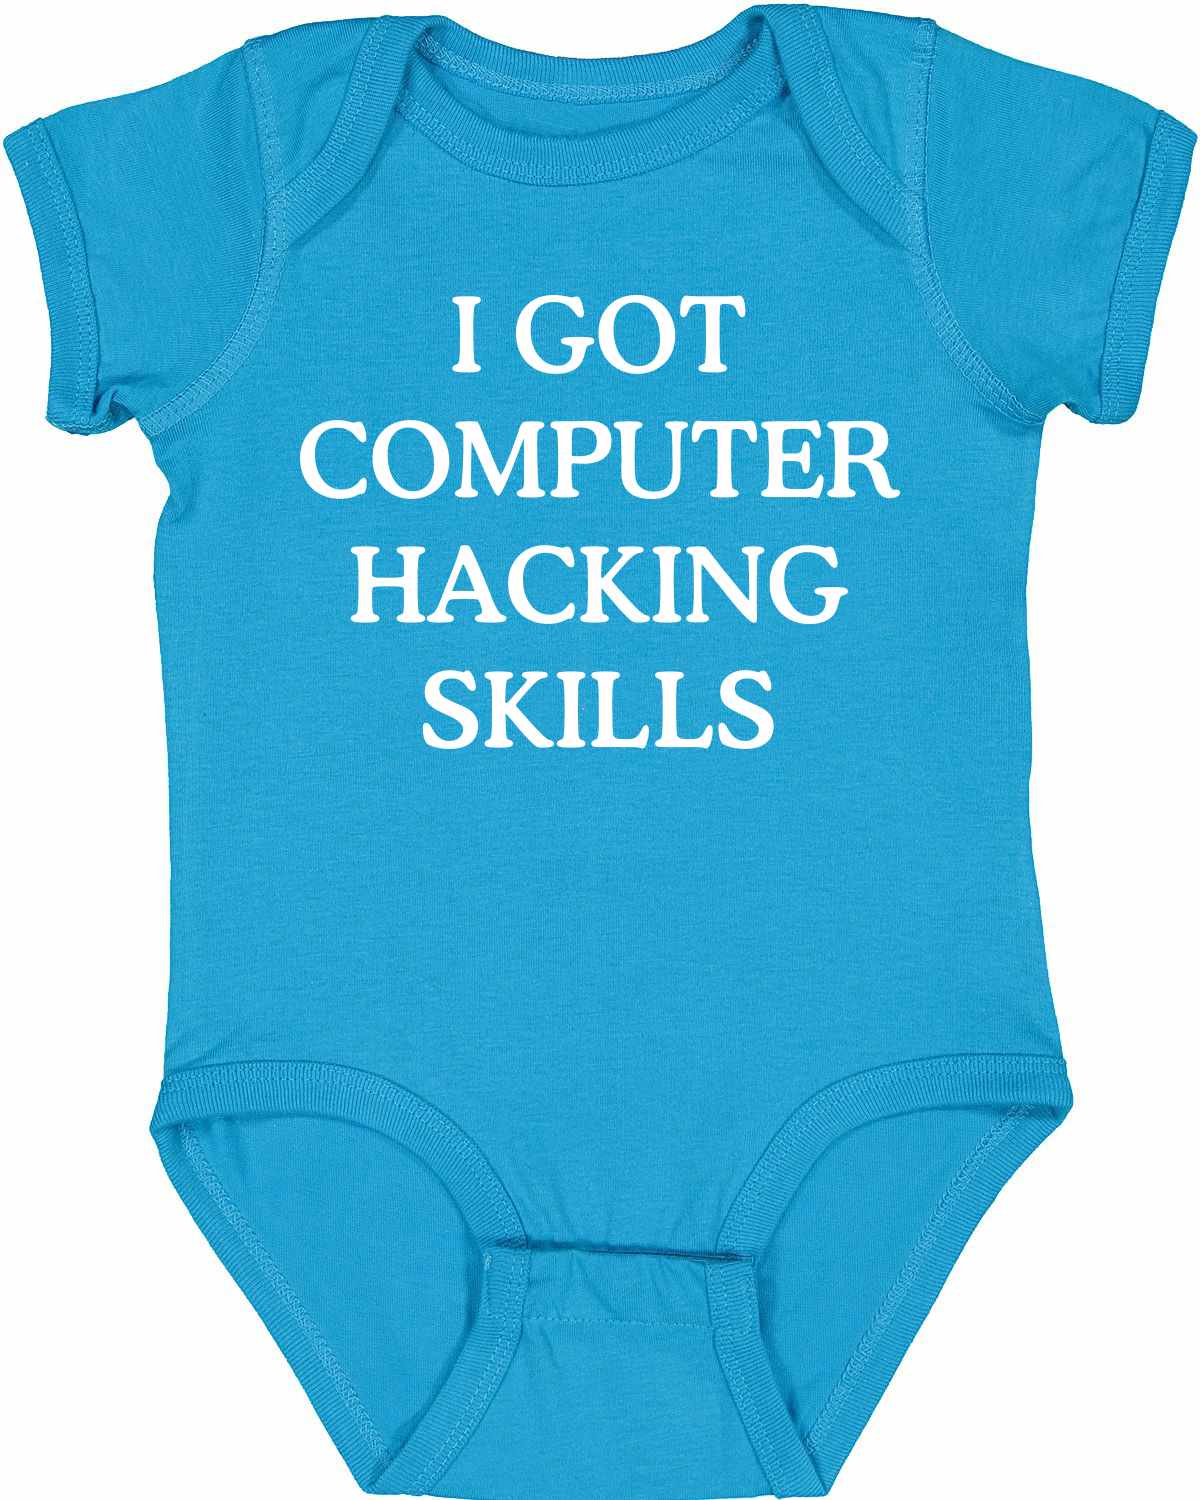 I GOT COMPUTER HACKING SKILLS on Infant BodySuit (#382-10)